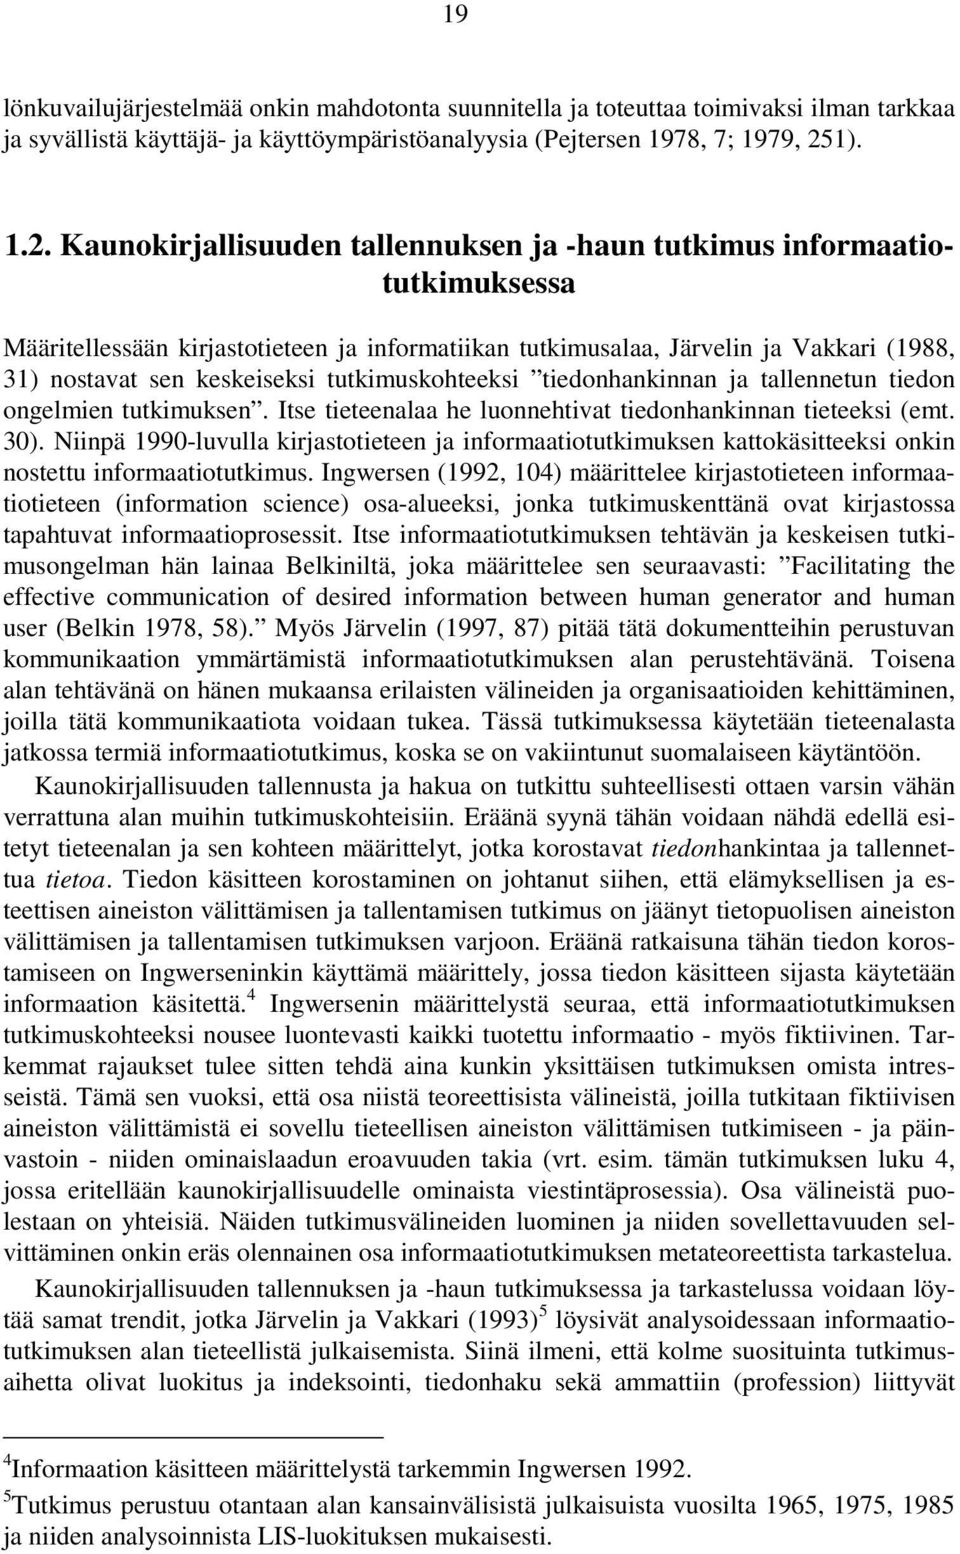 Kaunokirjallisuuden tallennuksen ja -haun tutkimus informaatiotutkimuksessa Määritellessään kirjastotieteen ja informatiikan tutkimusalaa, Järvelin ja Vakkari (1988, 31) nostavat sen keskeiseksi